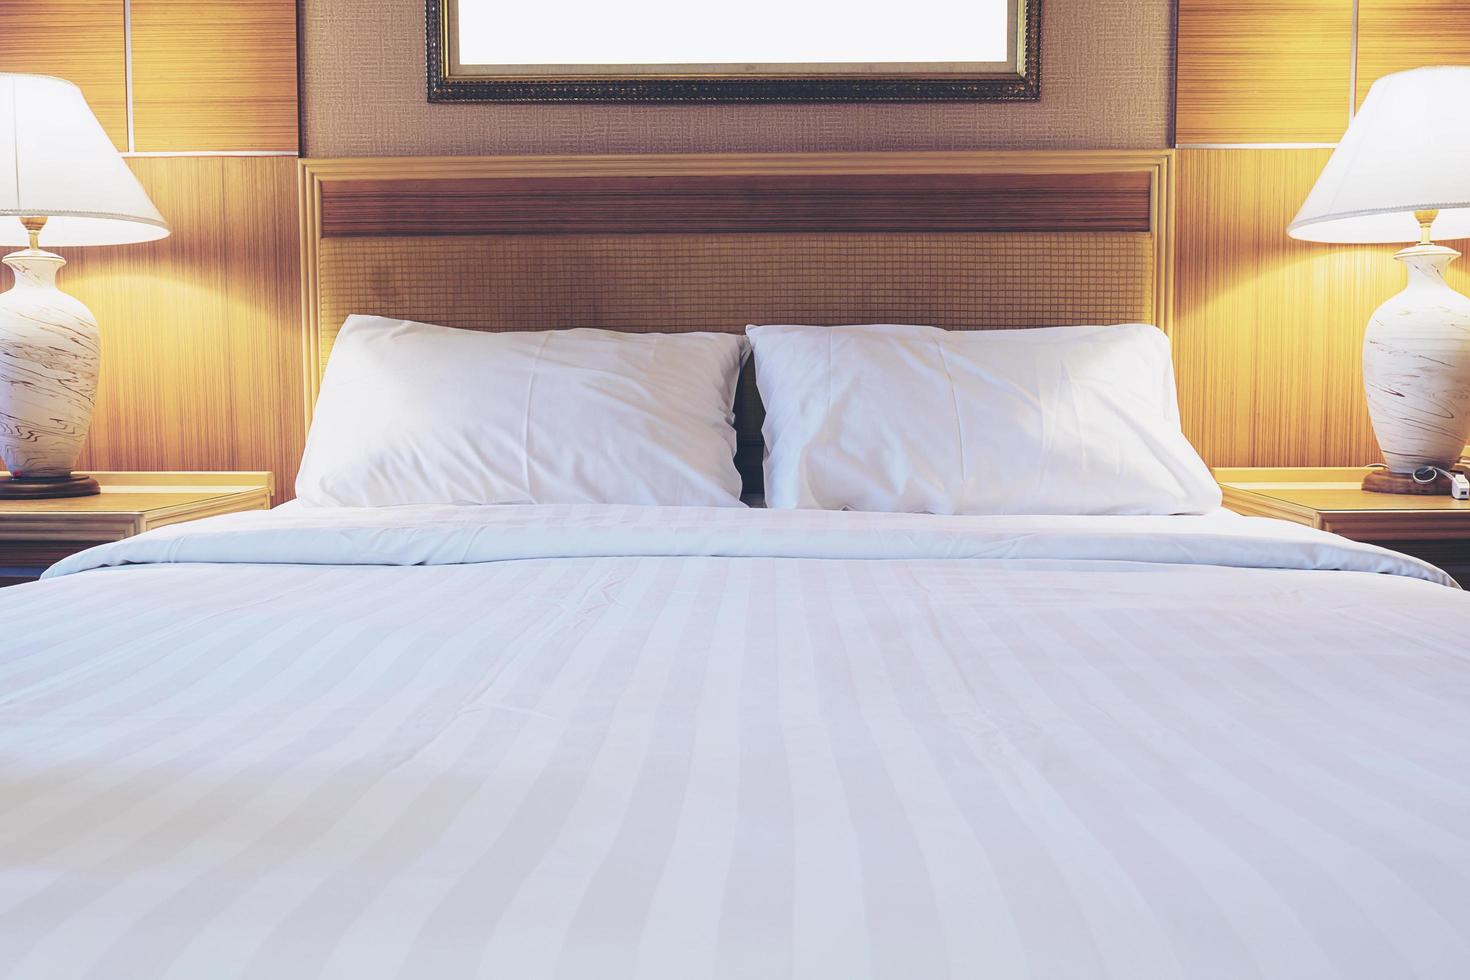 juego de toallas y ropa de cama blanca en un hotel moderno foto